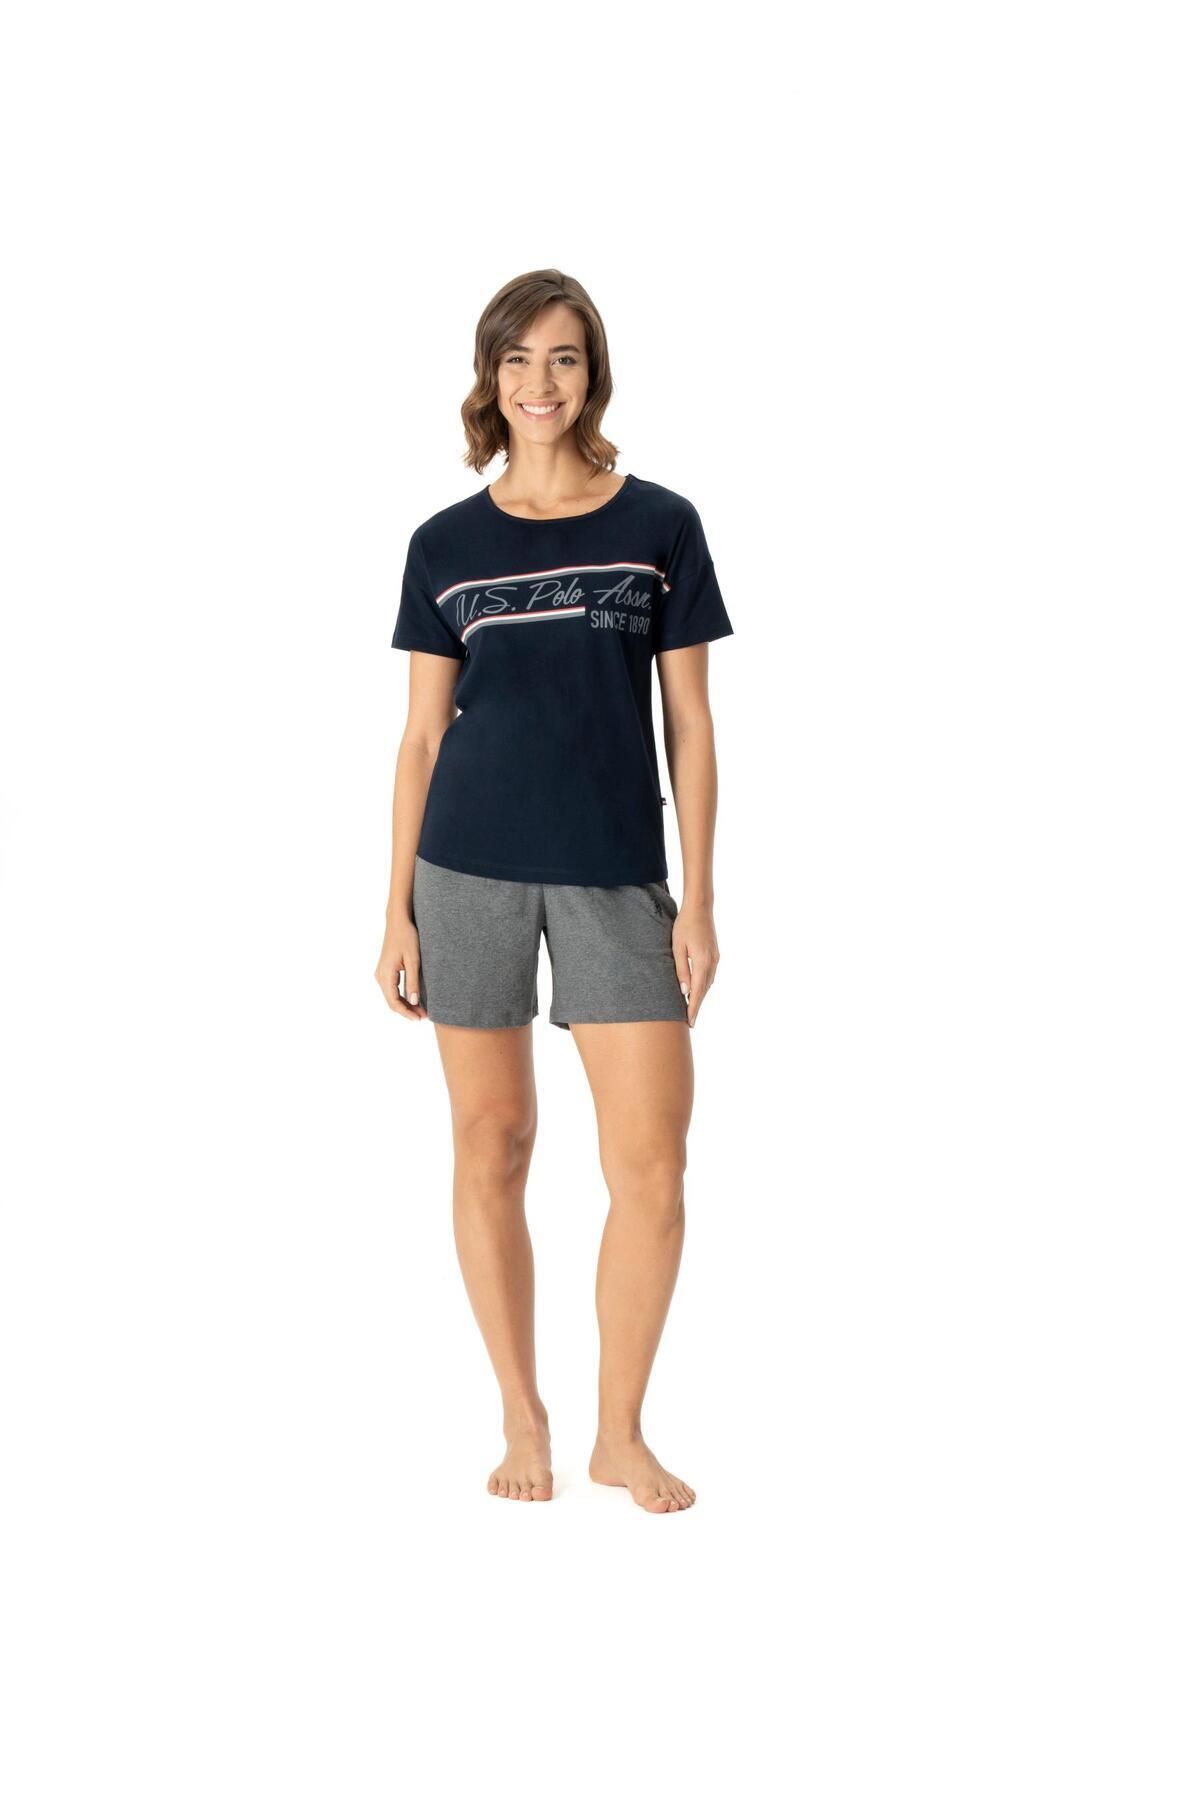 U.S. Polo Assn. Kadın Lacivert Geniş T-shirt Şort Takımı 16985